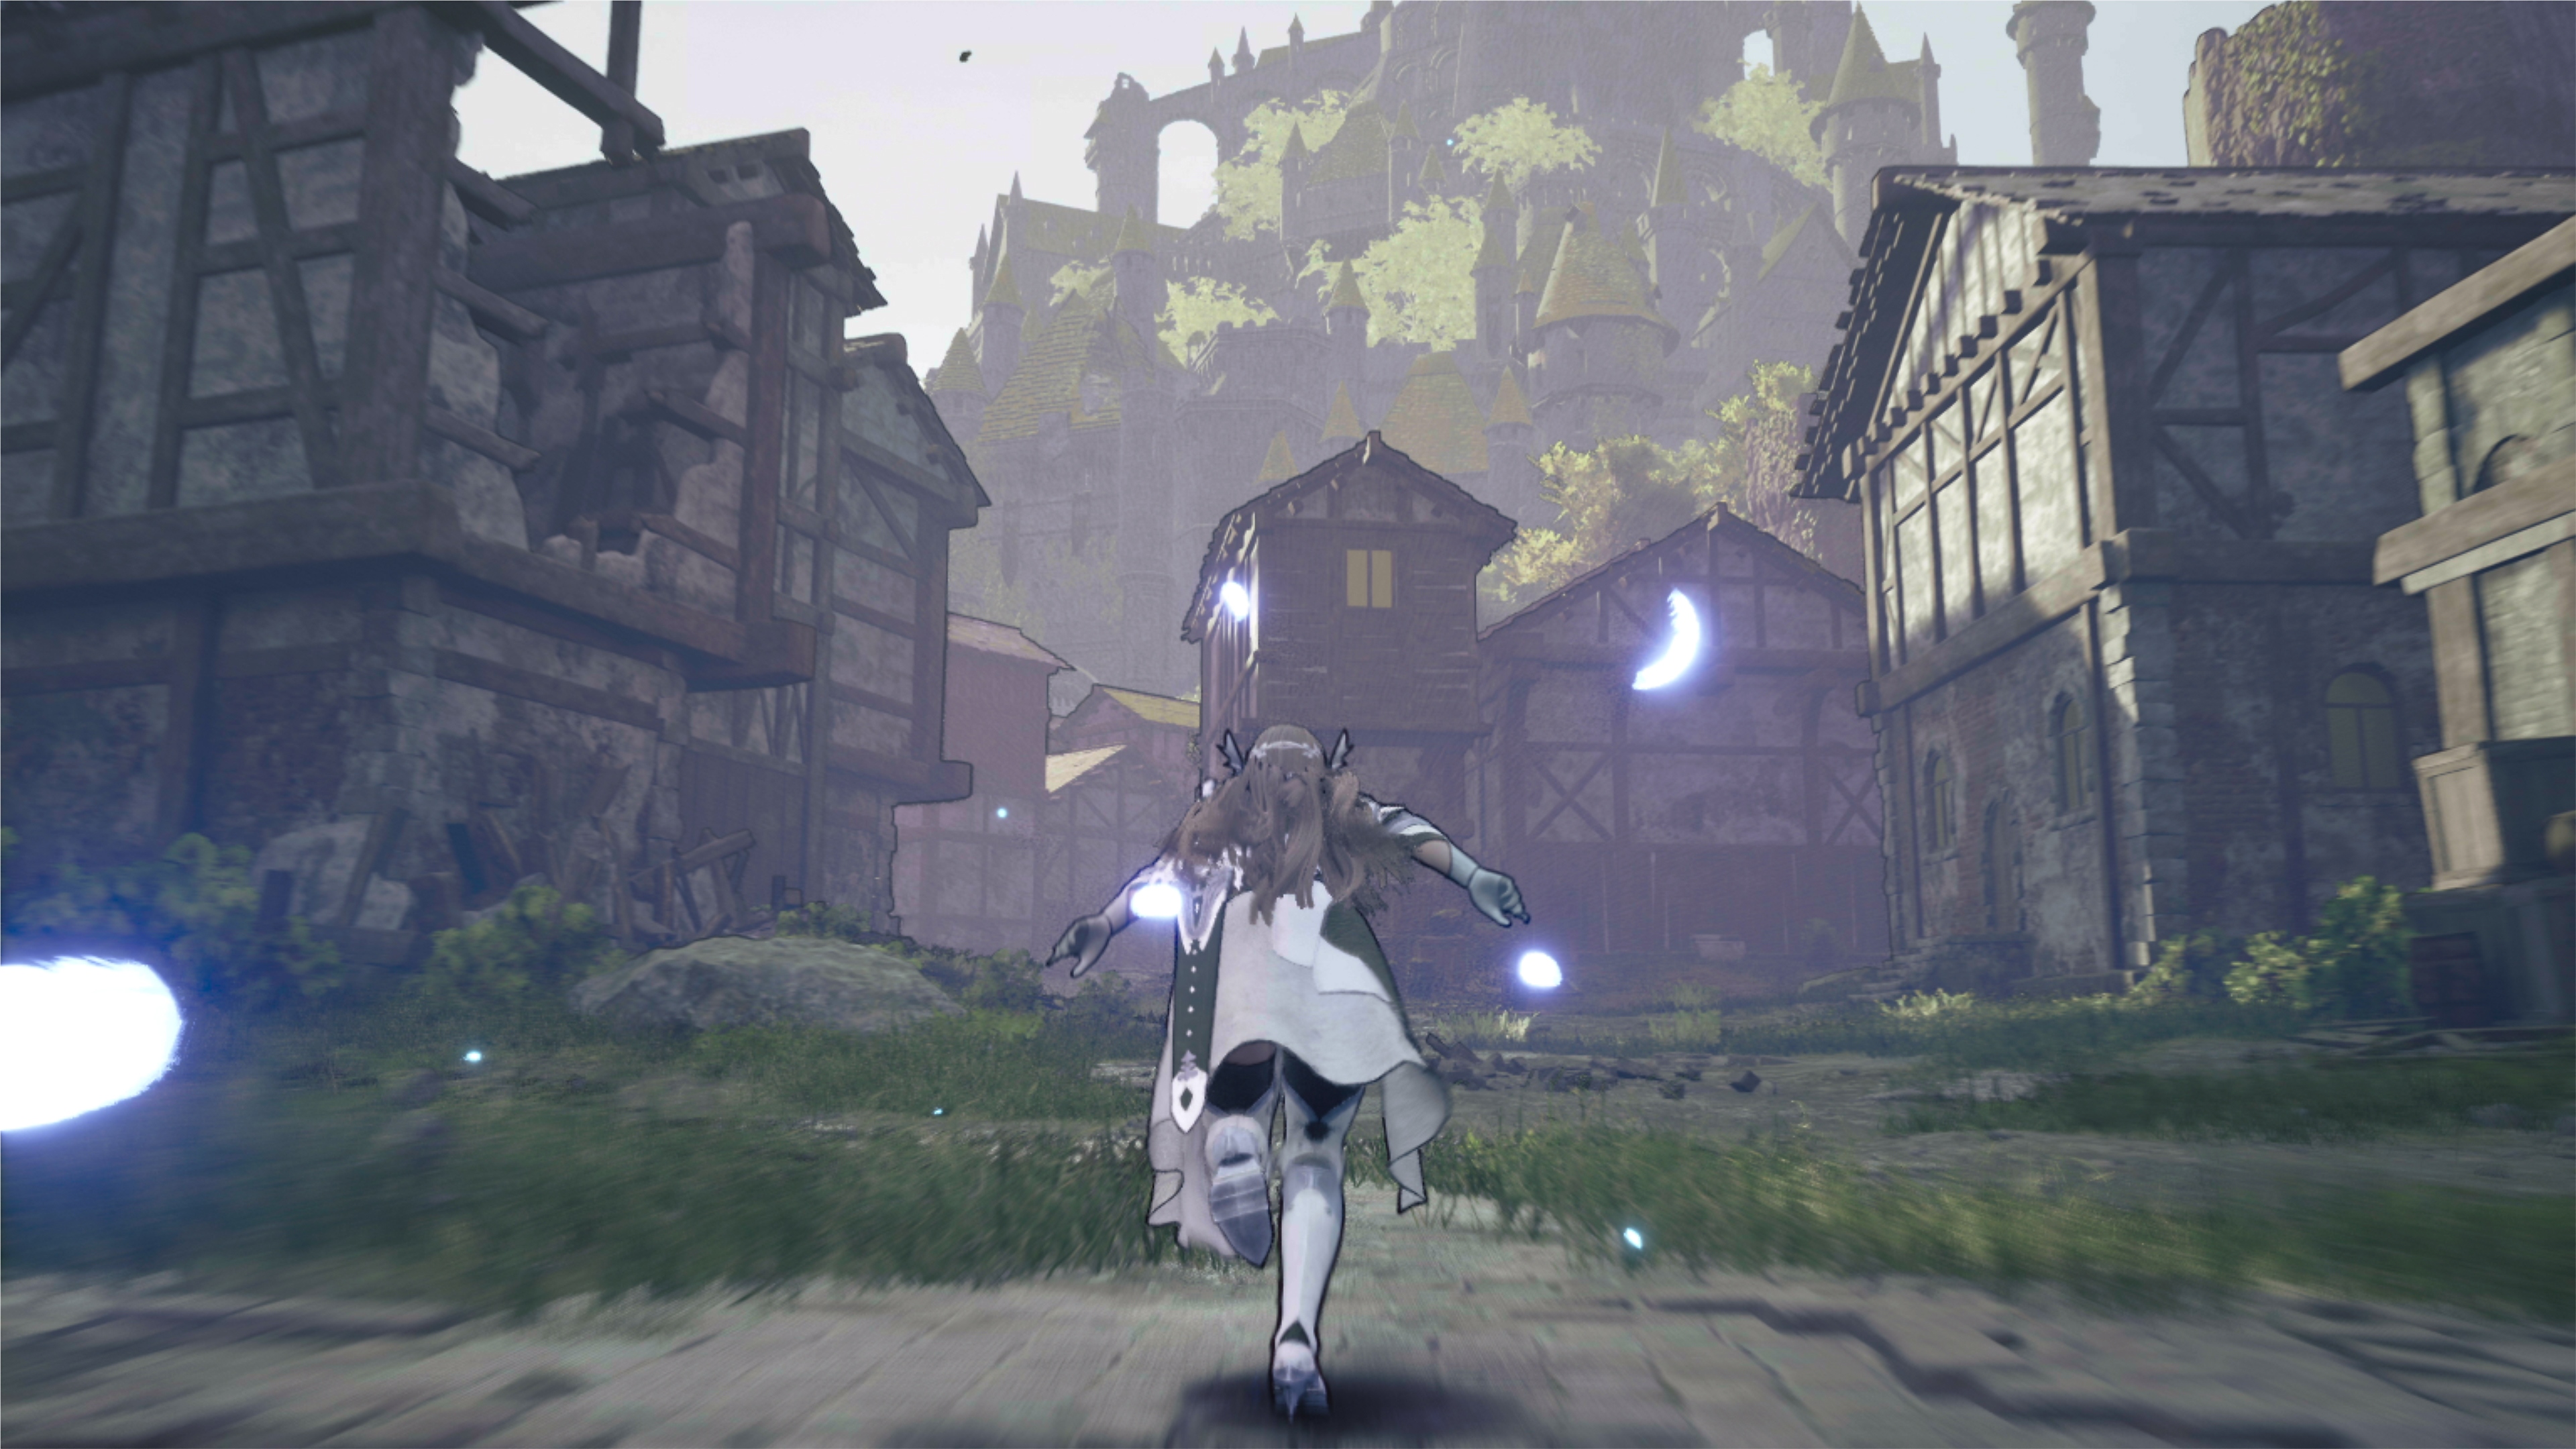 لقطة شاشة للعبة Valkyrie Elysium تظهر فيها إحدى الشخصيات بينما تركض في قرية مدمرة